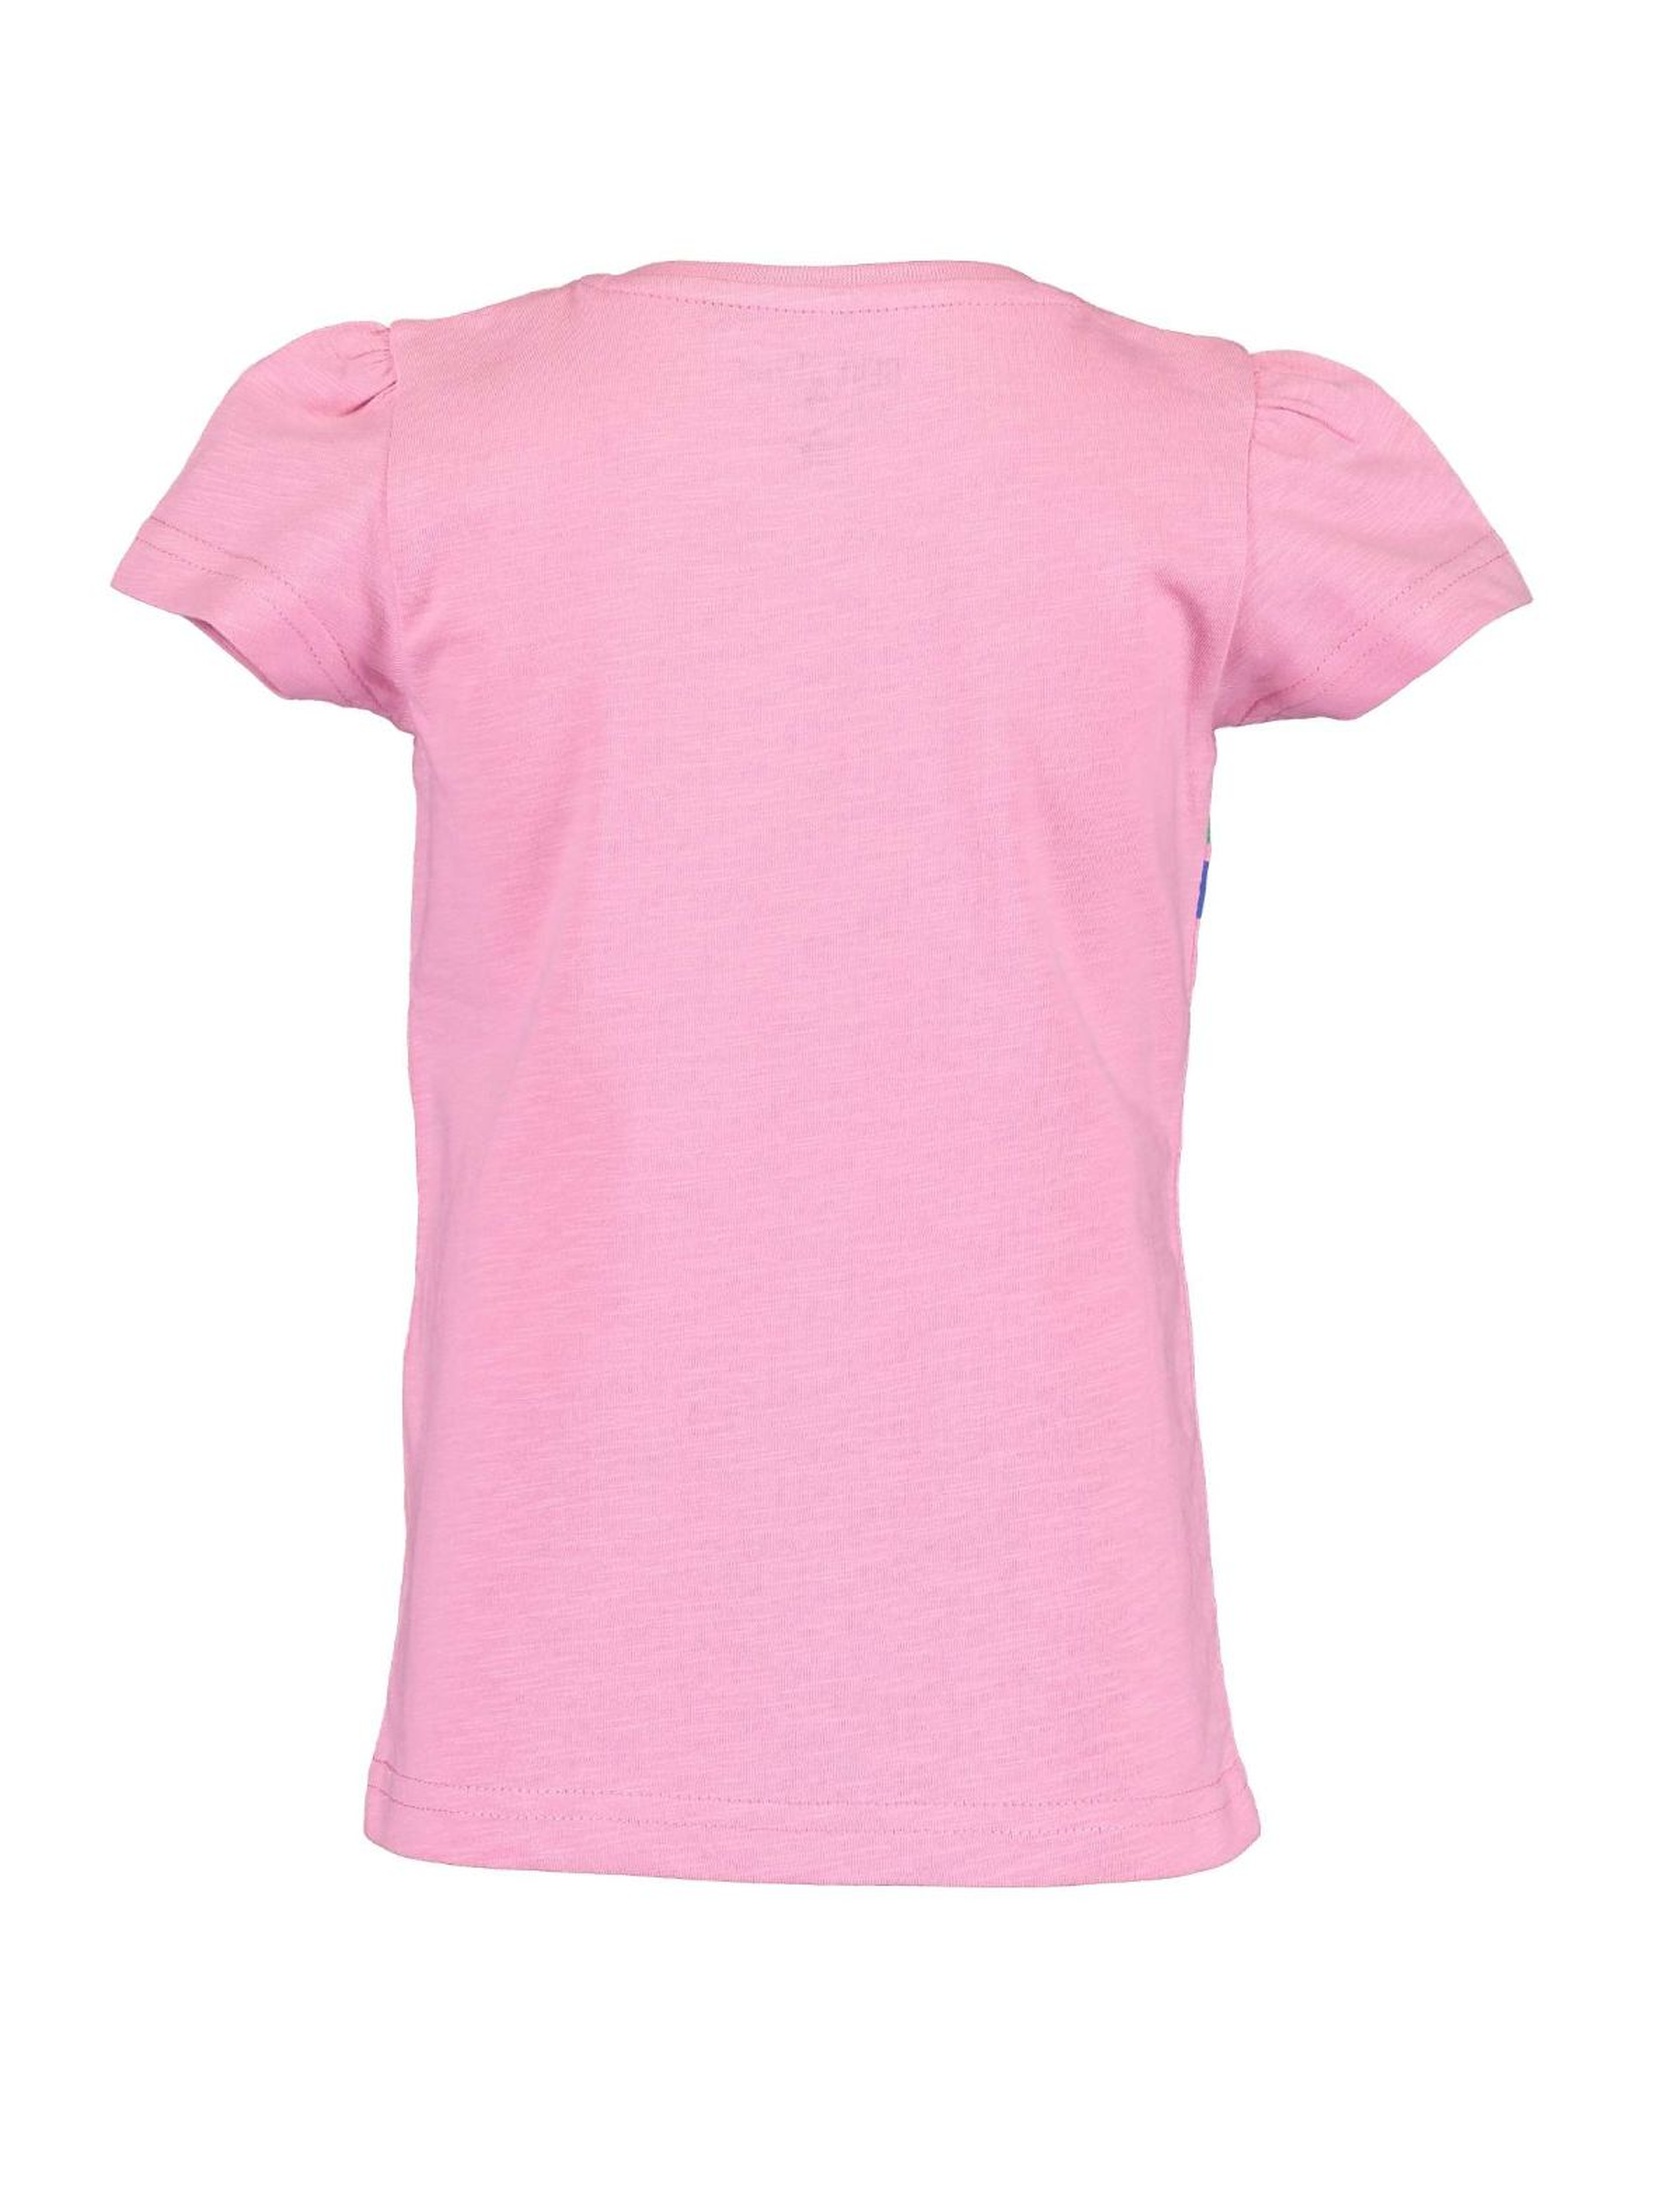 T-Shirt dziewczęcy różowy - smile